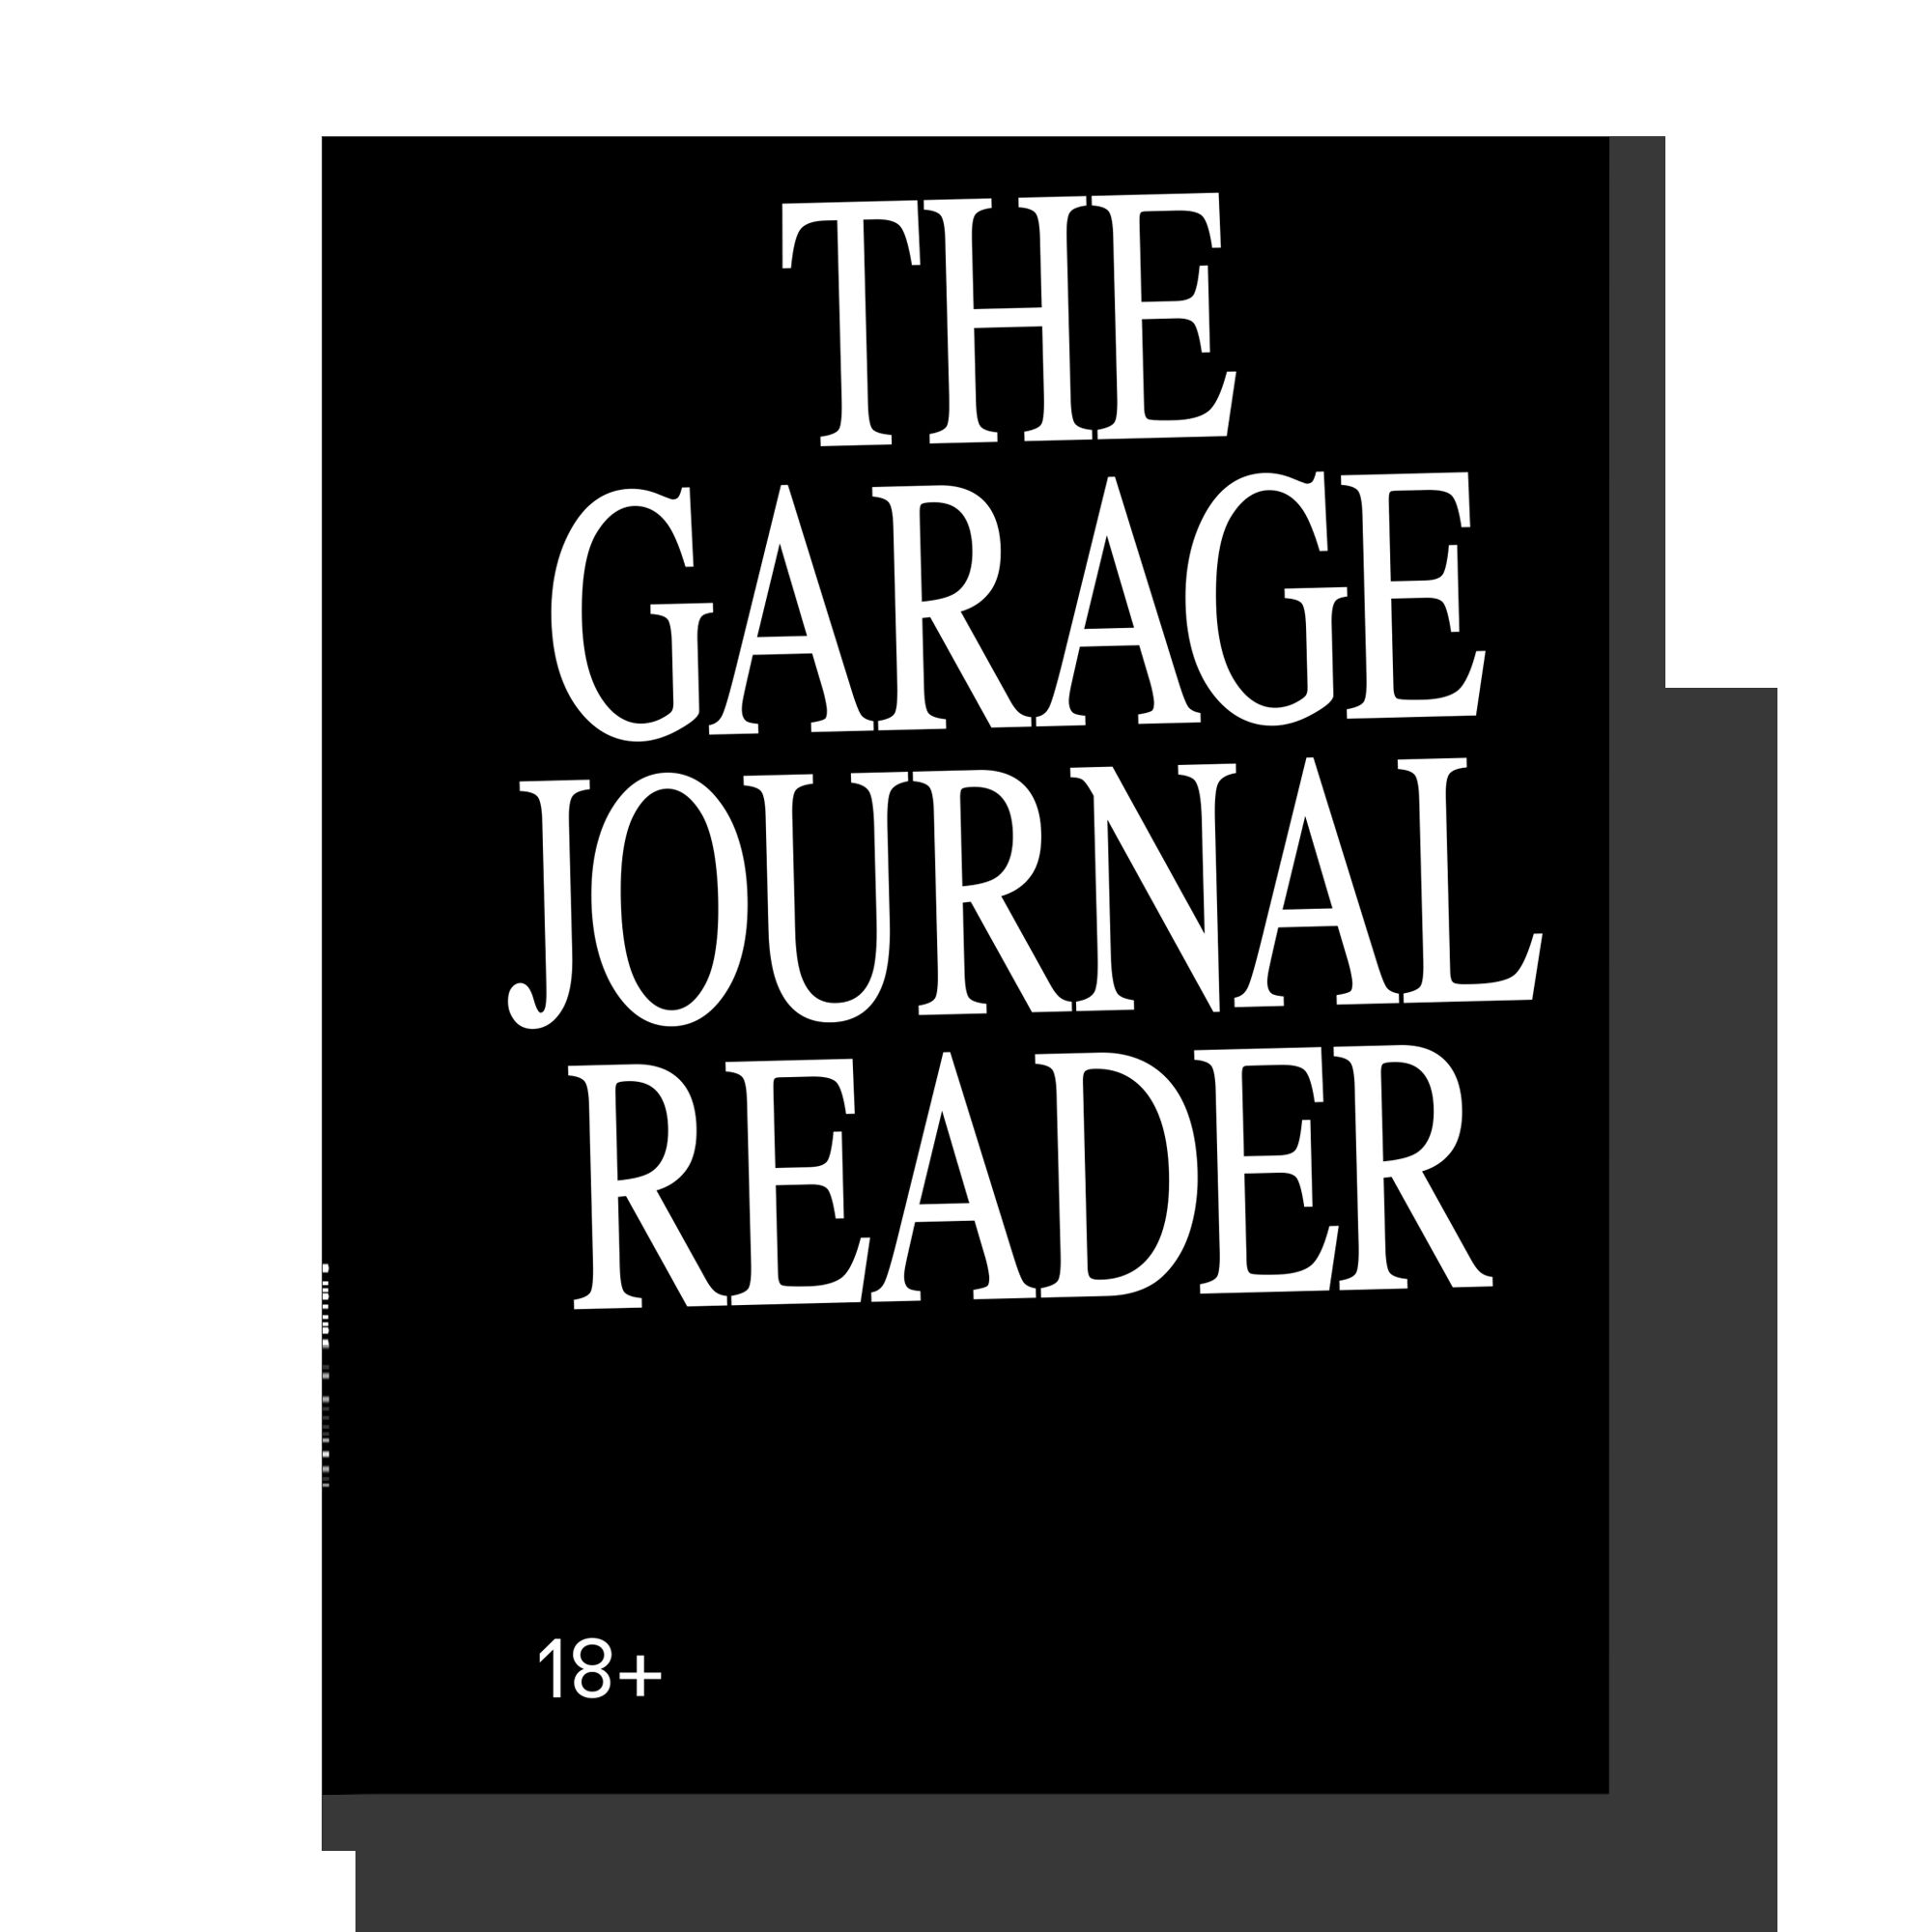 The Garage Journal Reader